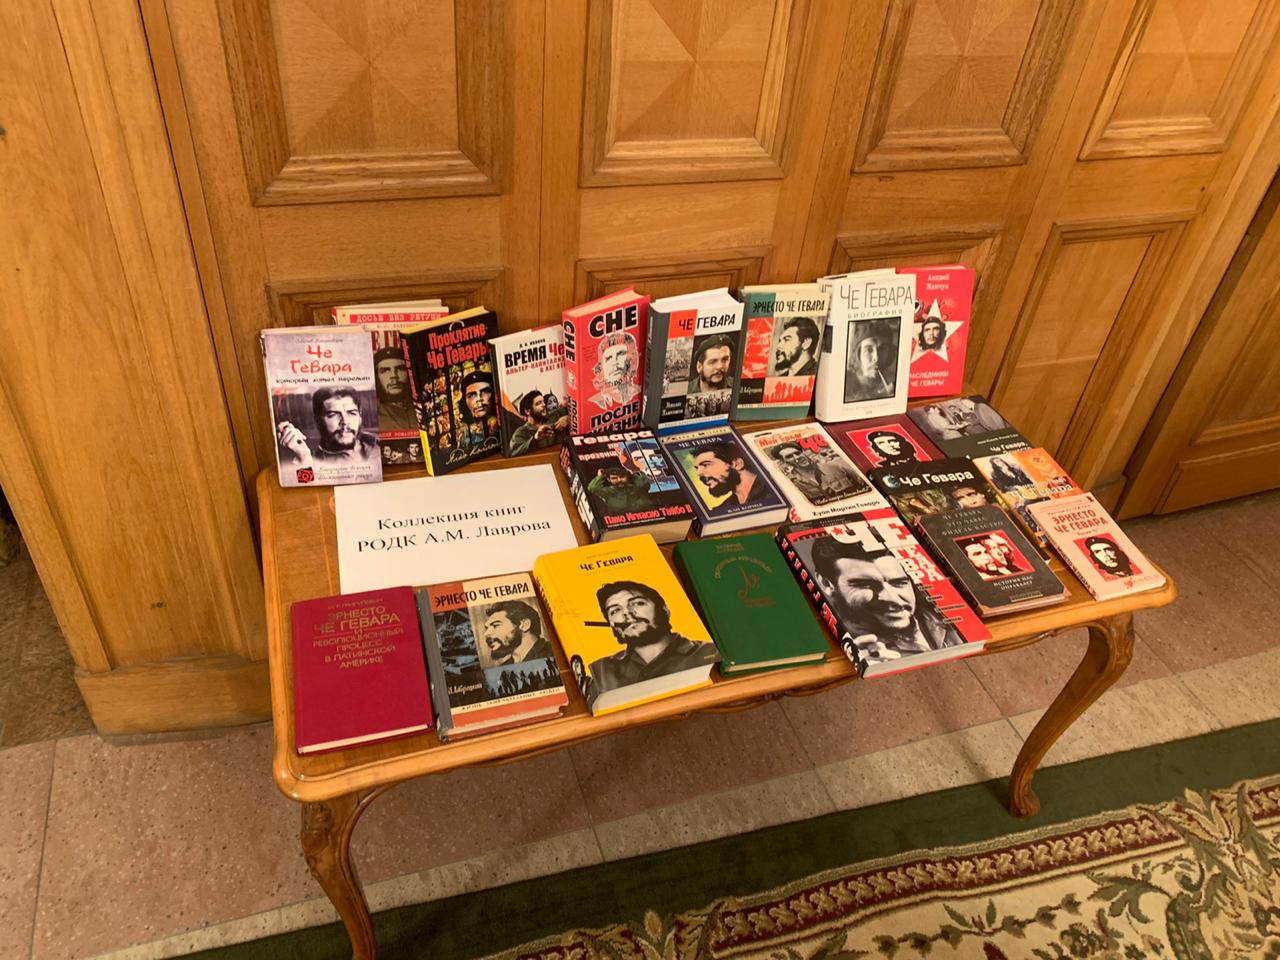 Выставка части коллекции книг об Эрнесто  Че Гевааре А.М. Лаврова.